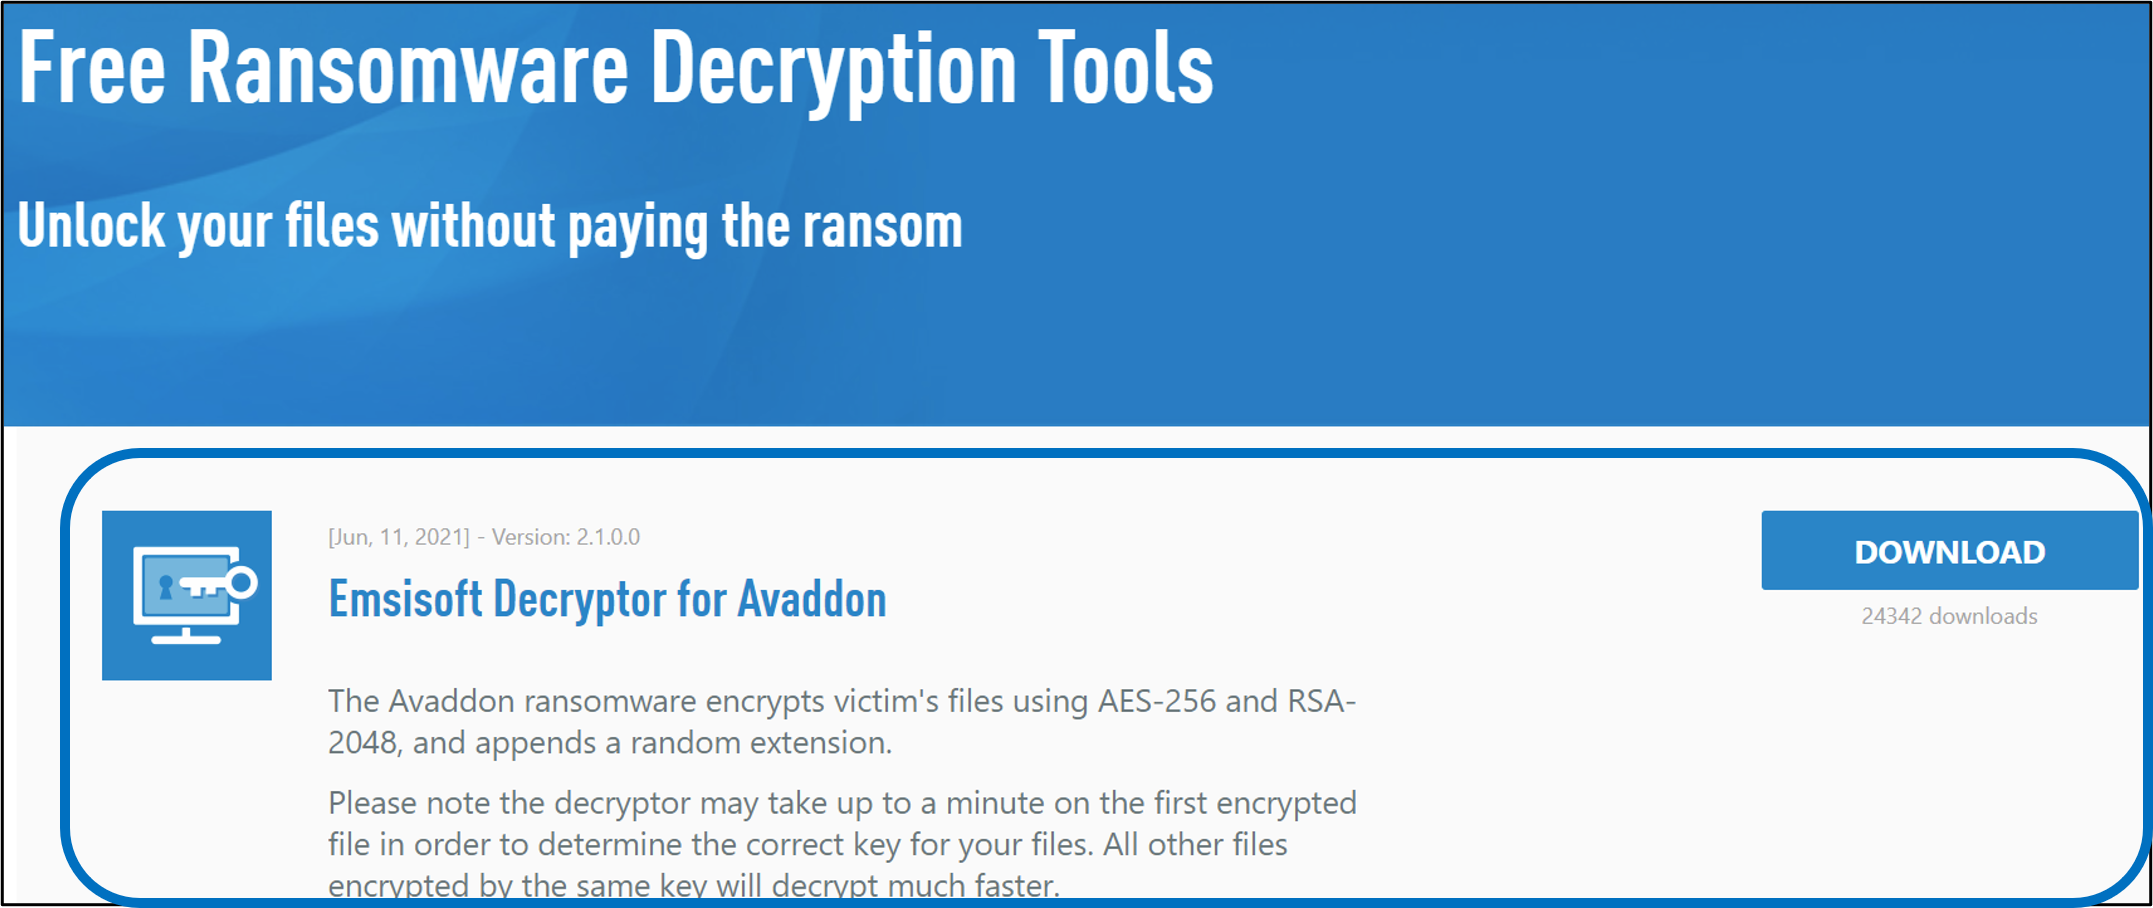 圖11、EMISI SOFT Free Ransomware Decryption Tool 解密工具列表頁面